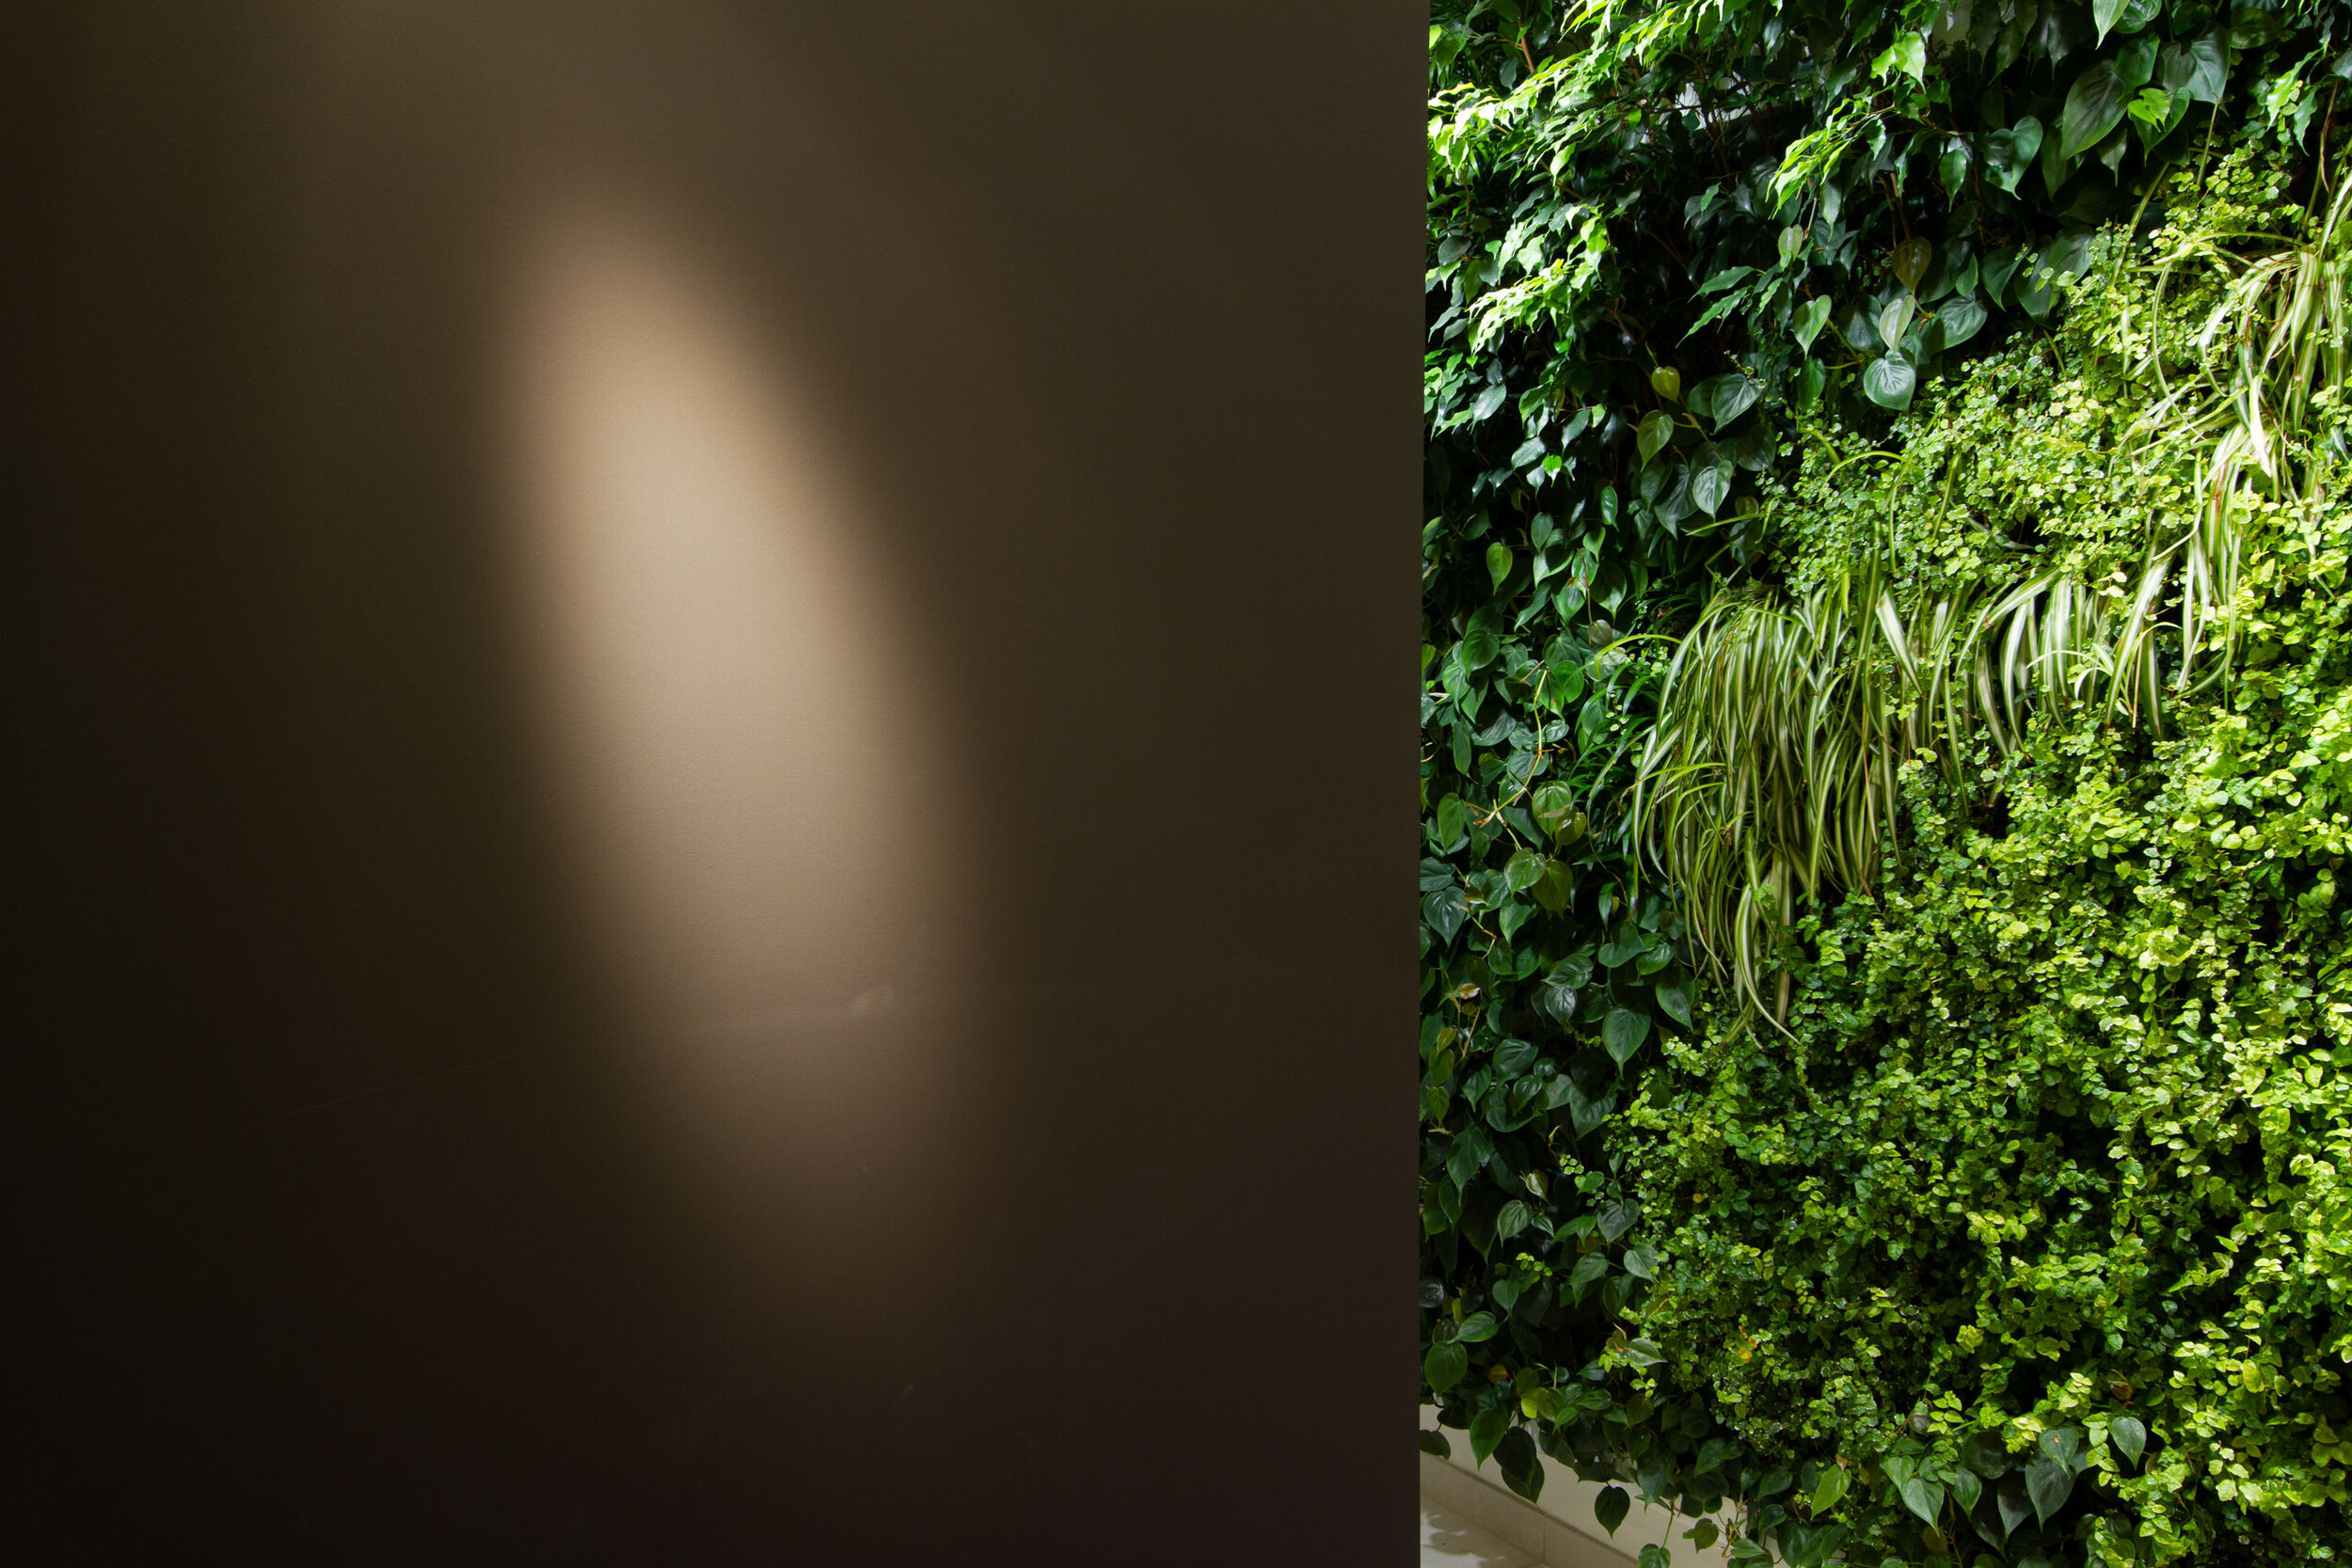 studio-cavazza-garden-vertical-wall-green-sundar-italia-004.JPG